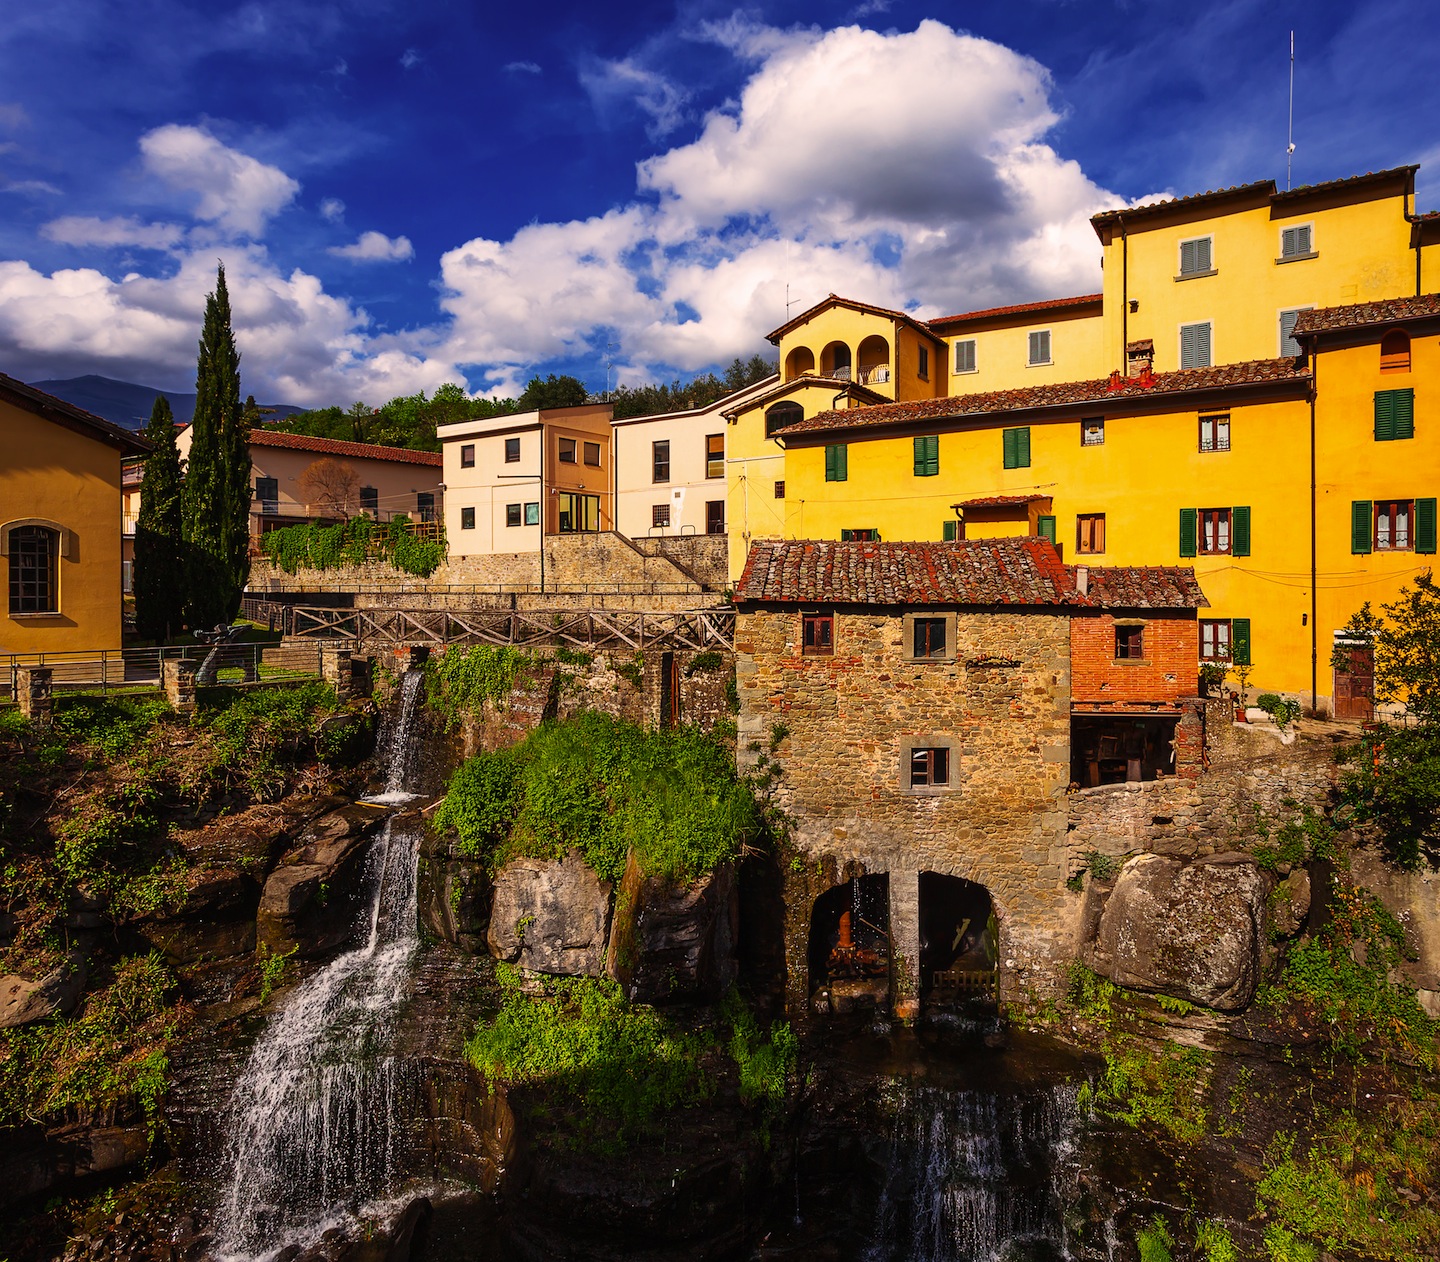 Loro Ciuffenna Toscana, è uno dei borghi più belli di Italia. Ai piedi del Pratomagno e vicino al Valdarno, è famoso per le coltivazioni di fagiolo zolfino